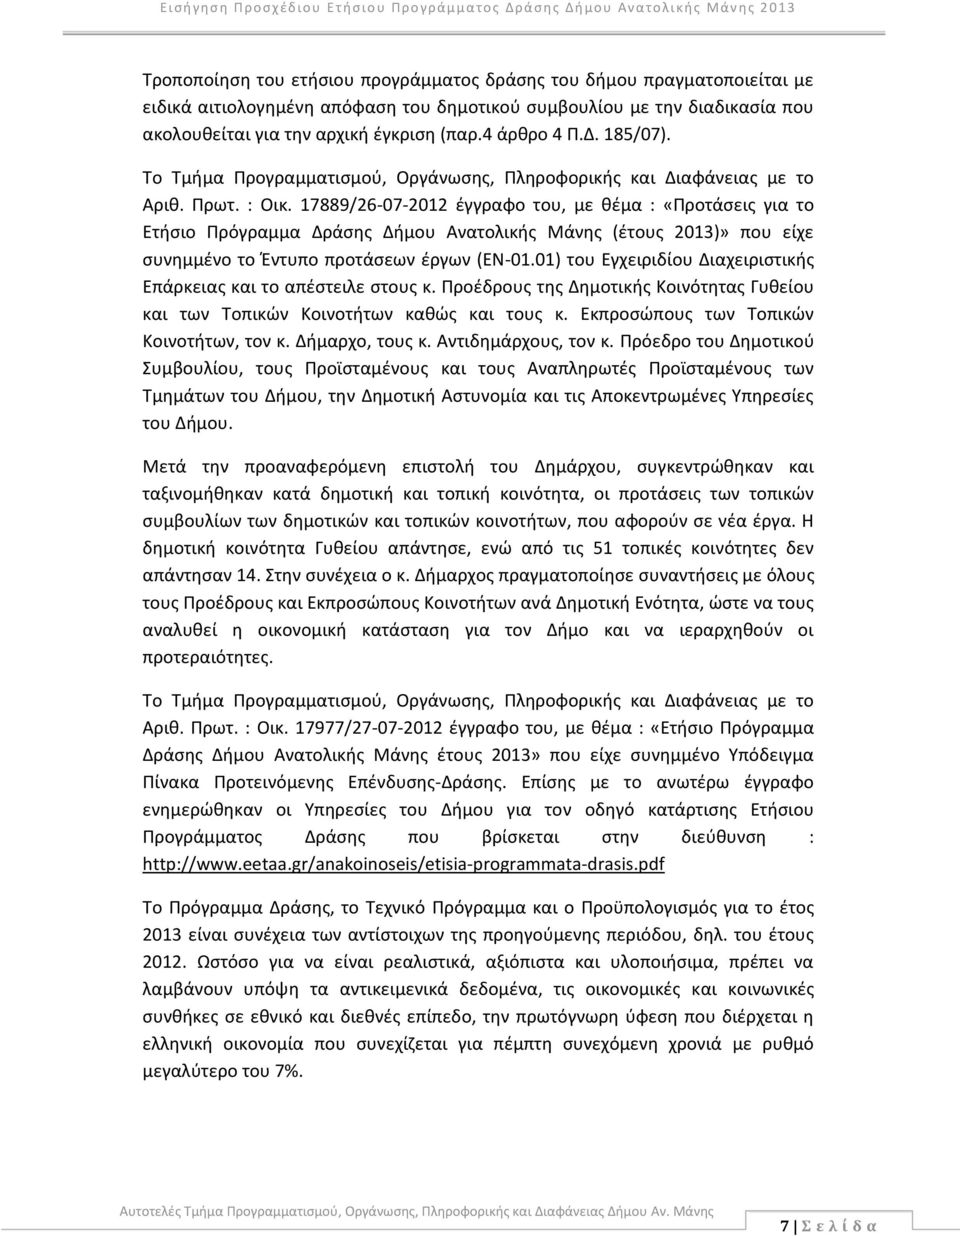 17889/26-07-2012 έγγραφο του, με θέμα : «Προτάσεις για το Ετήσιο Πρόγραμμα Δράσης Δήμου Ανατολικής Μάνης (έτους 2013)» που είχε συνημμένο το Έντυπο προτάσεων έργων (EN-01.